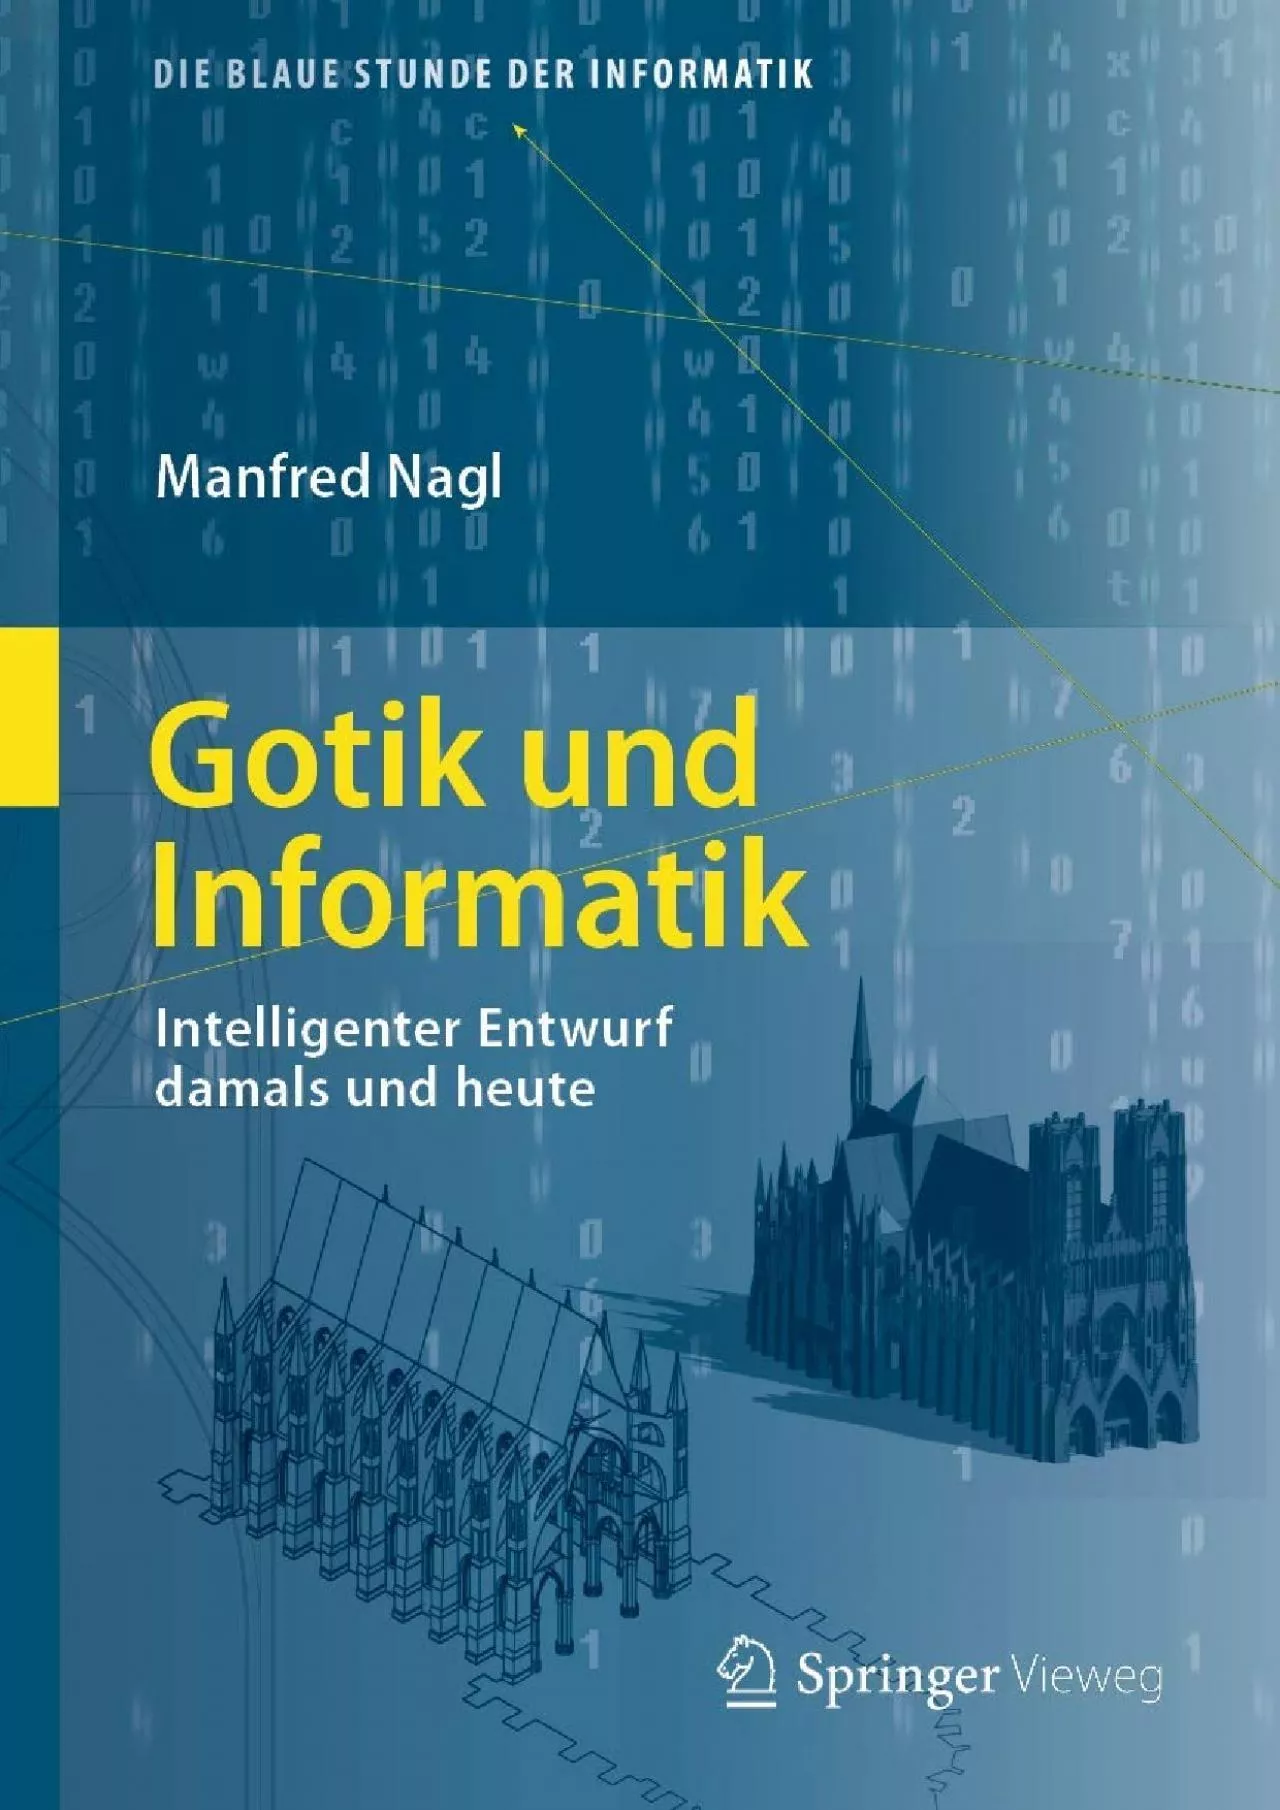 [BEST]-Gotik und Informatik: Intelligenter Entwurf damals und heute (Die blaue Stunde